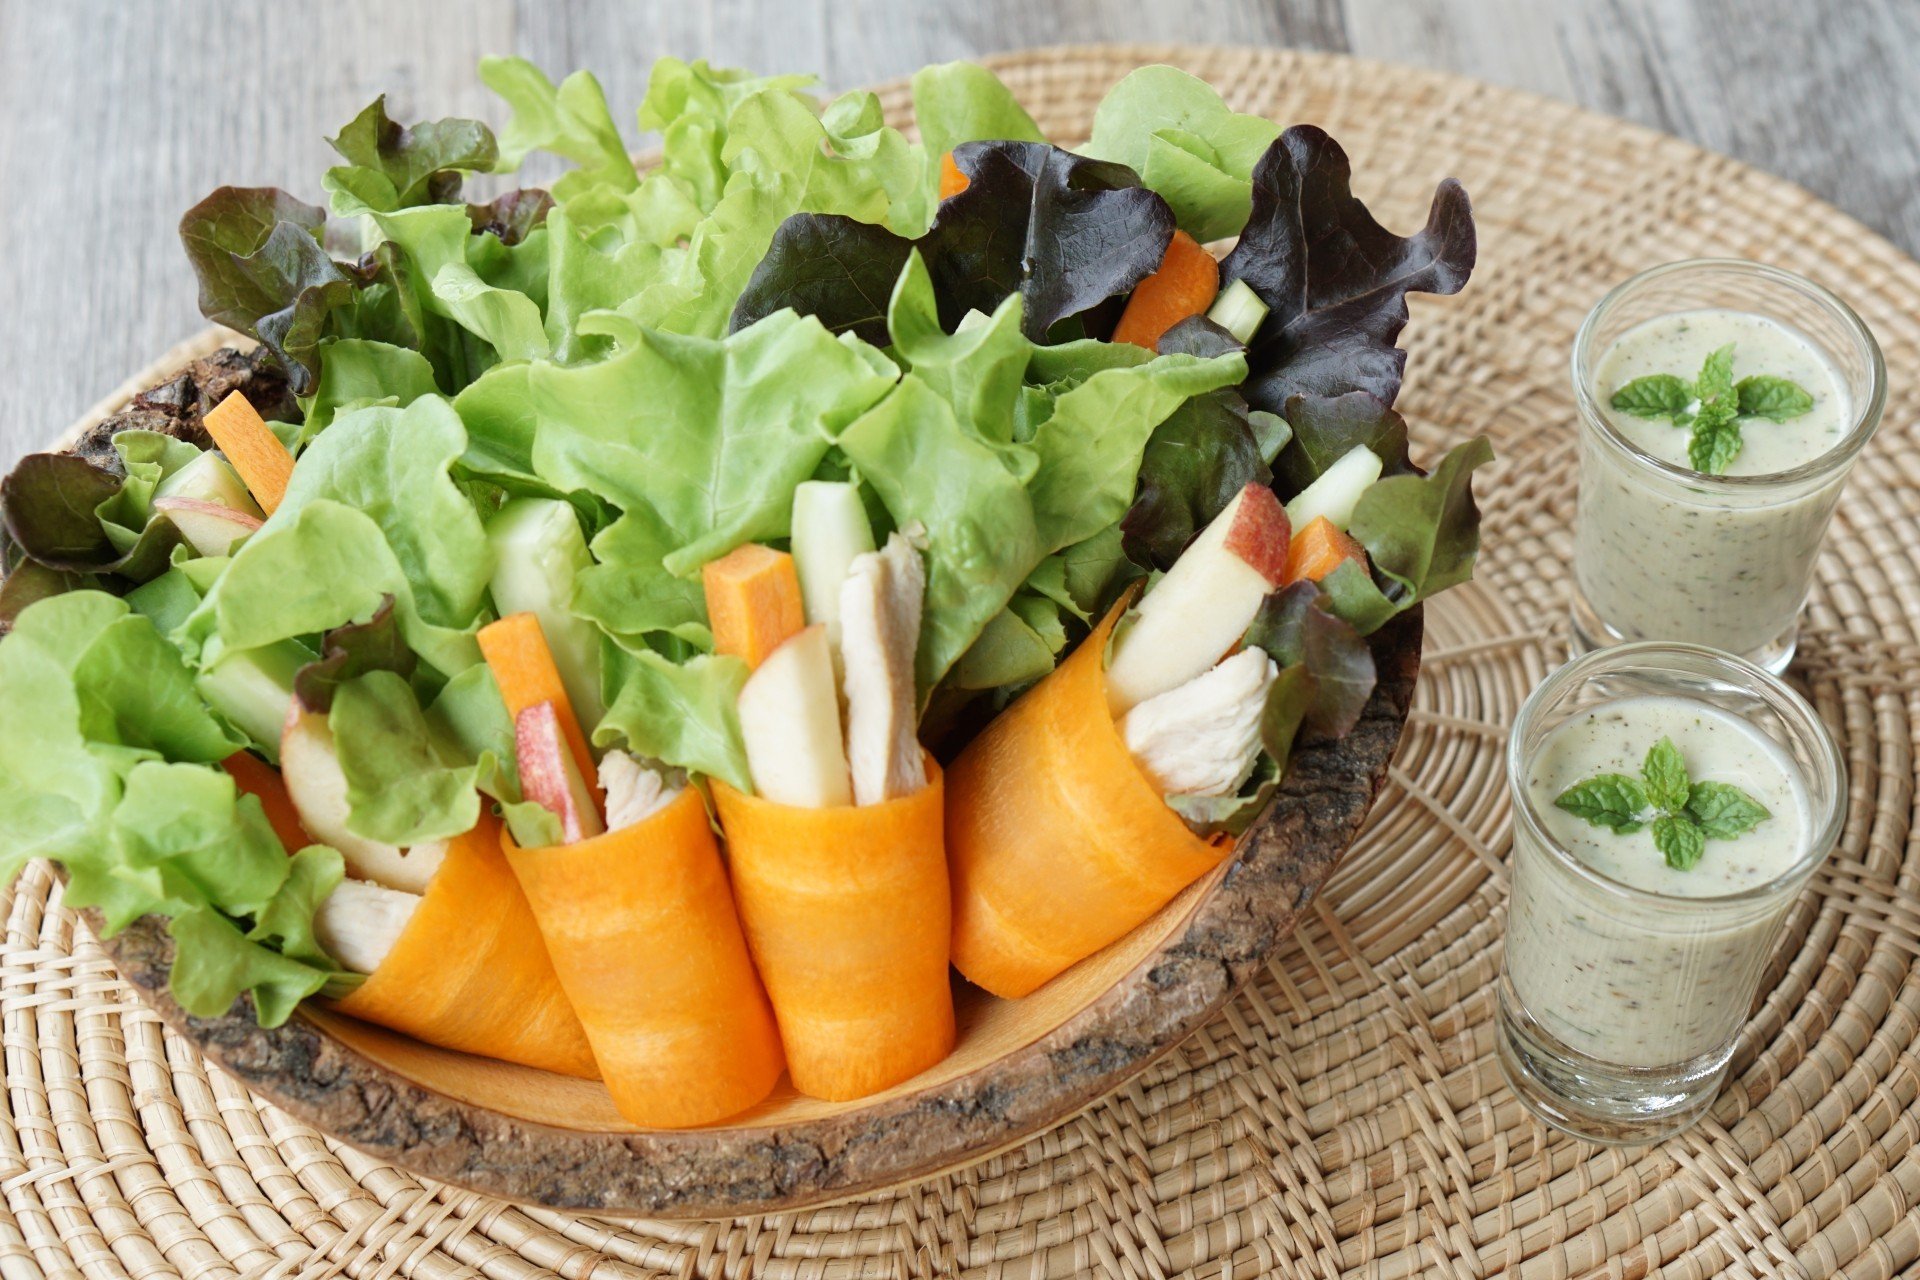 20 สูตร “เมนูสลัด” ทั้งผัก ทั้งผลไม้อัดแน่นเต็มคำ เอาใจคนรักสุขภาพ!